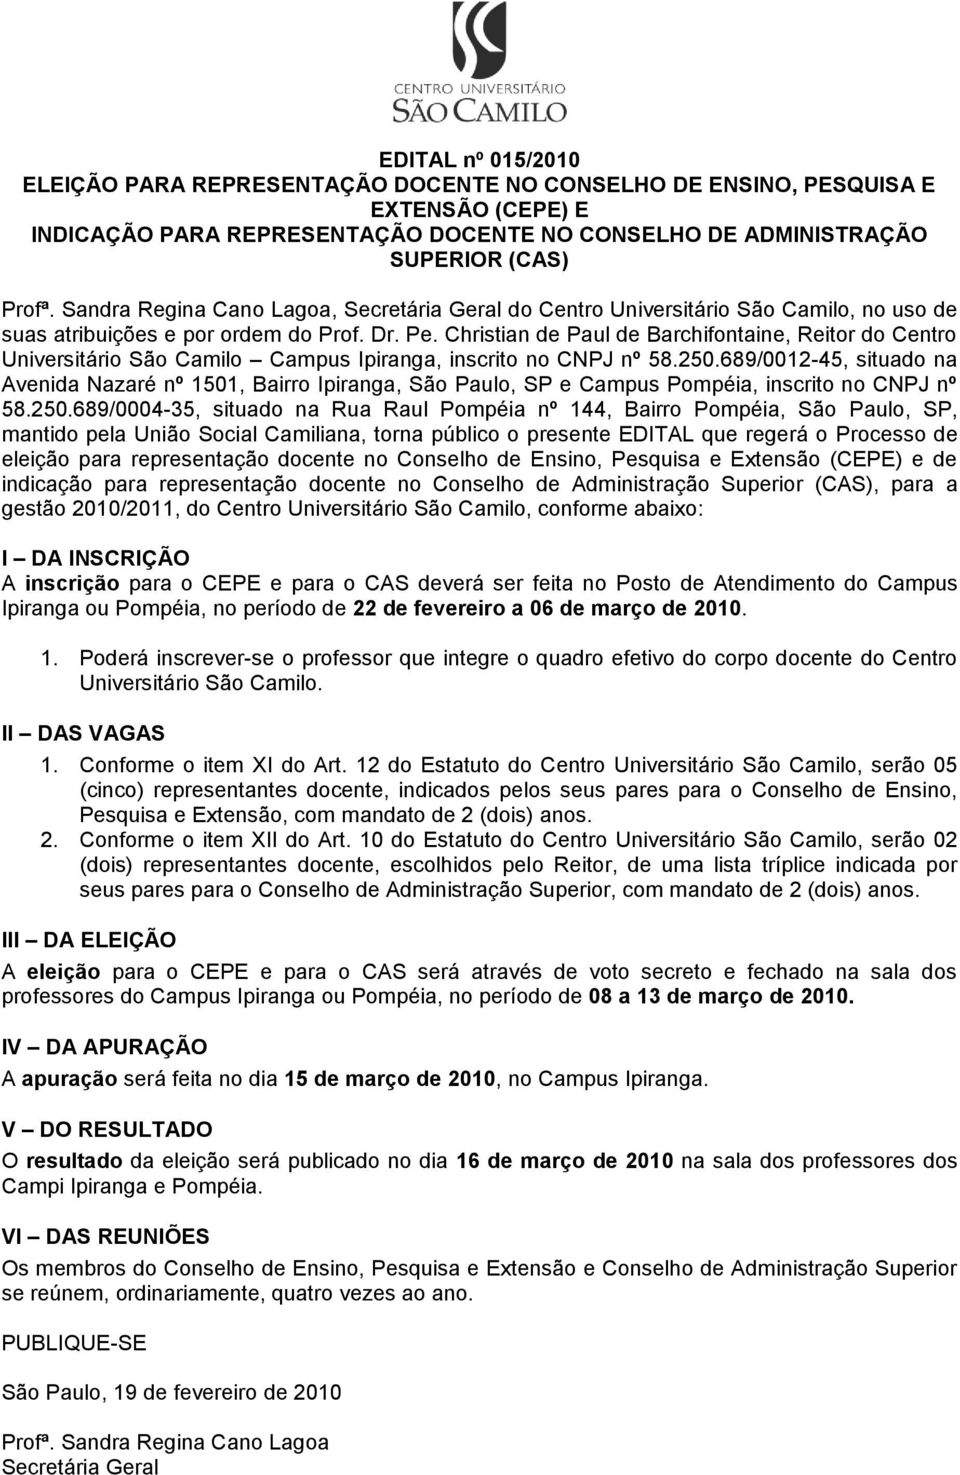 Superior (CAS), para a gestão 2010/2011, do Centro Universitário São Camilo, conforme abaixo: A inscrição para o CEPE e para o CAS deverá ser feita no Posto de Atendimento do Campus Ipiranga ou